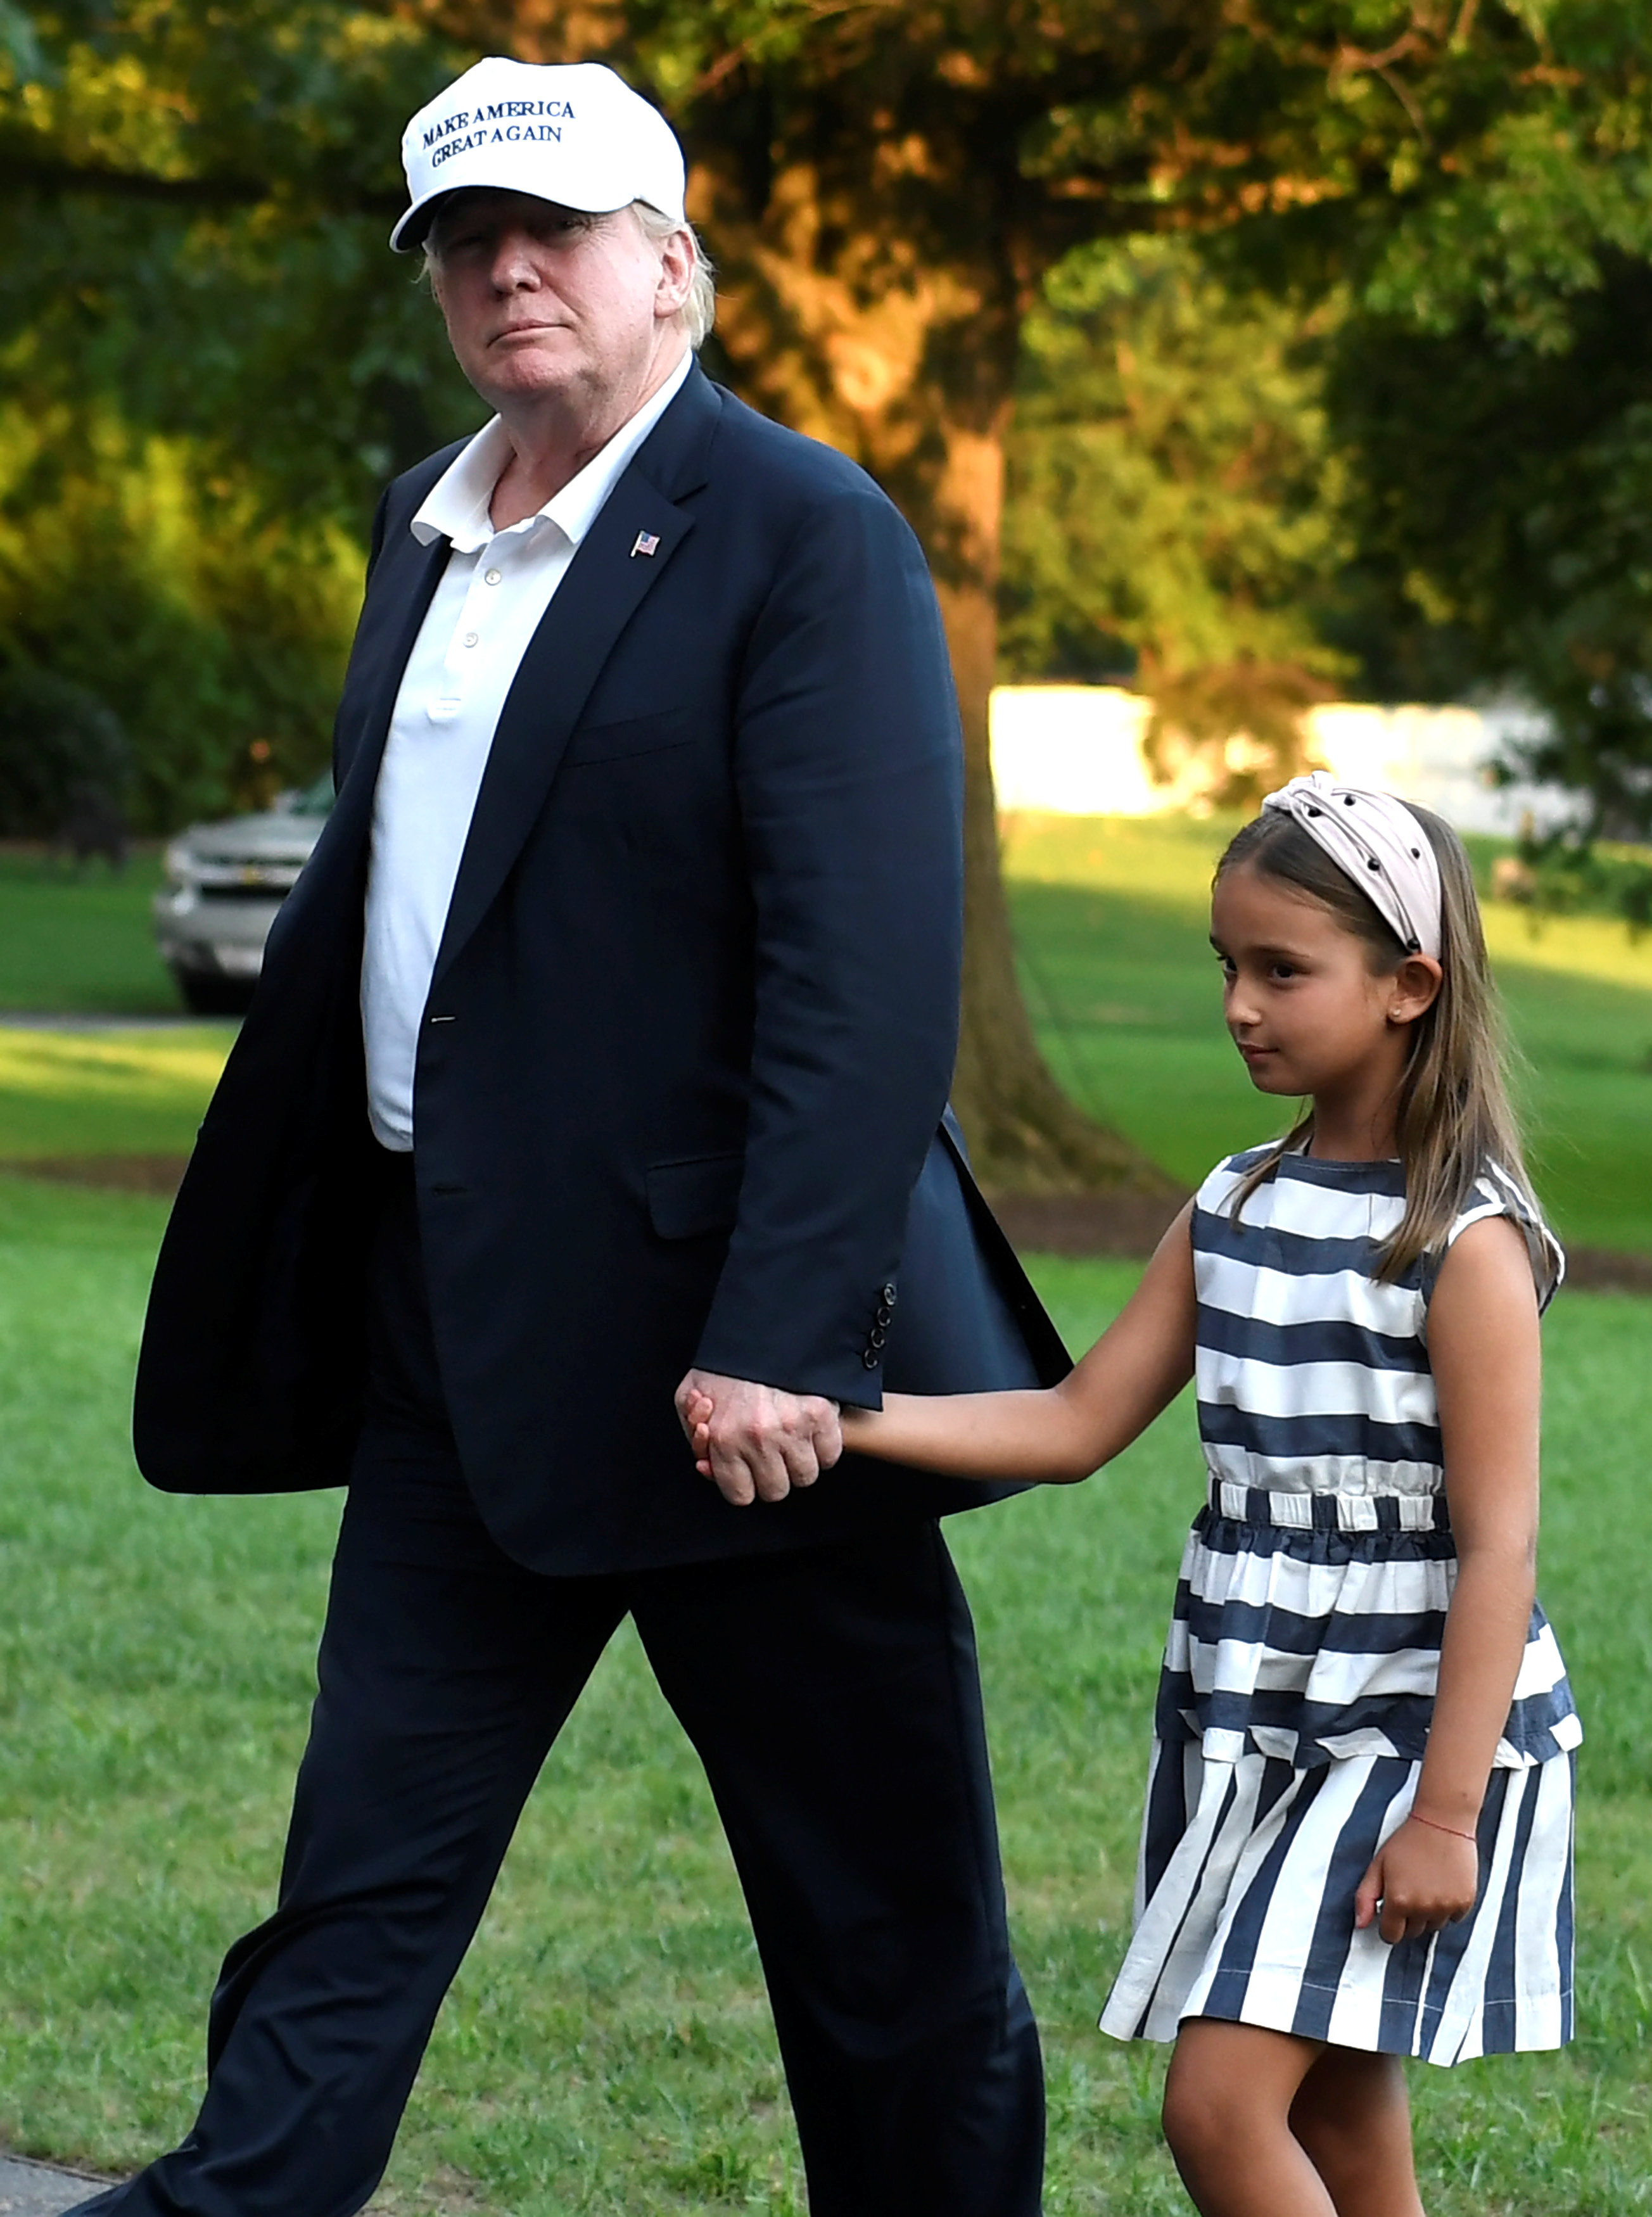 دونالد ترامب يسير جنبا إلى جنب مع حفيدتة أرابيلا